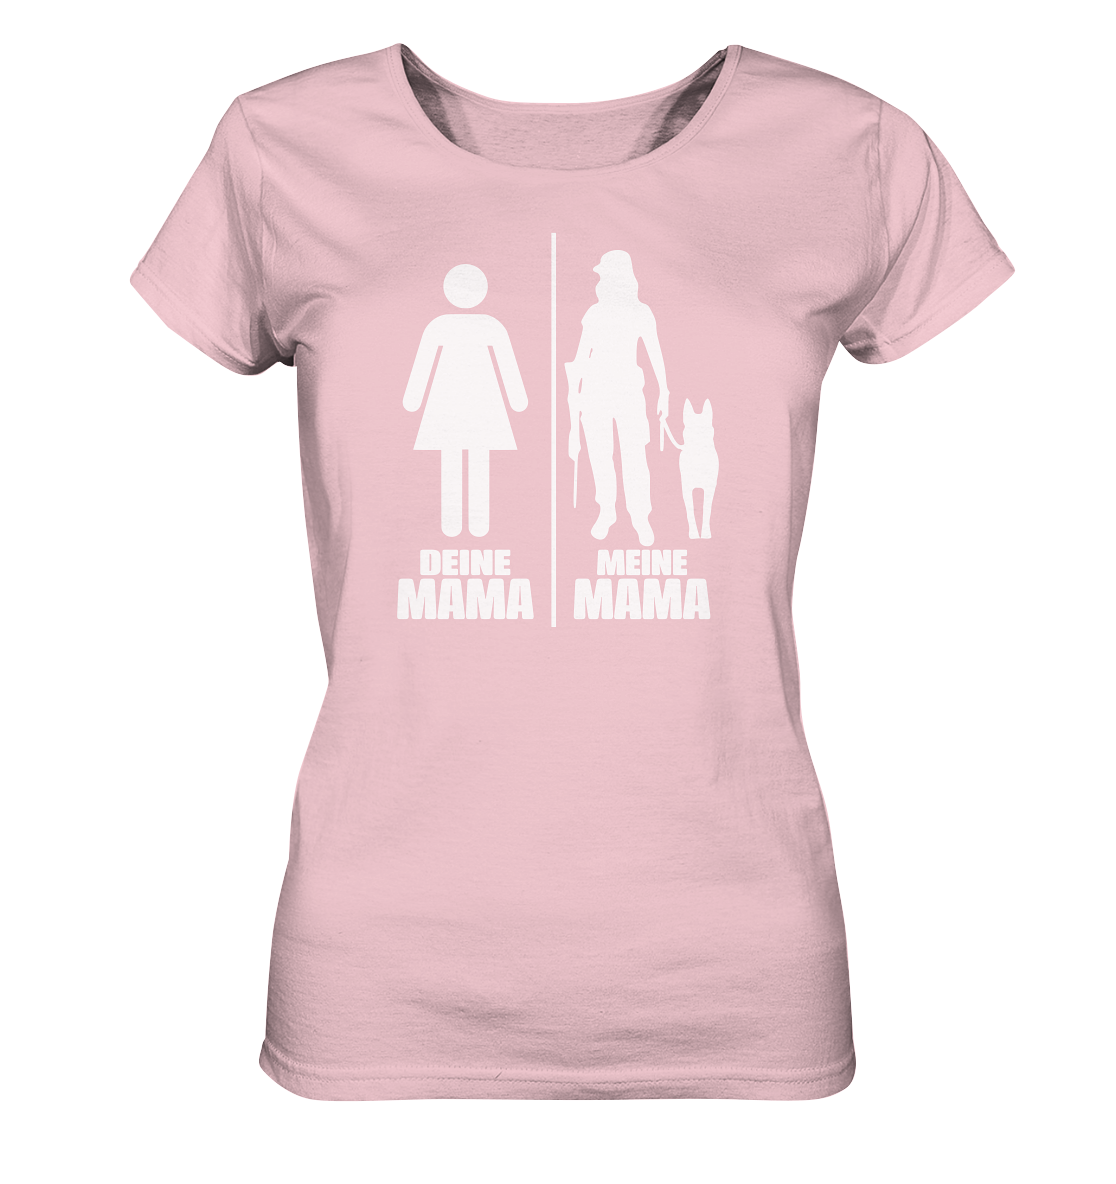 Deine Mama Meine Mama- Ladies Organic Shirt